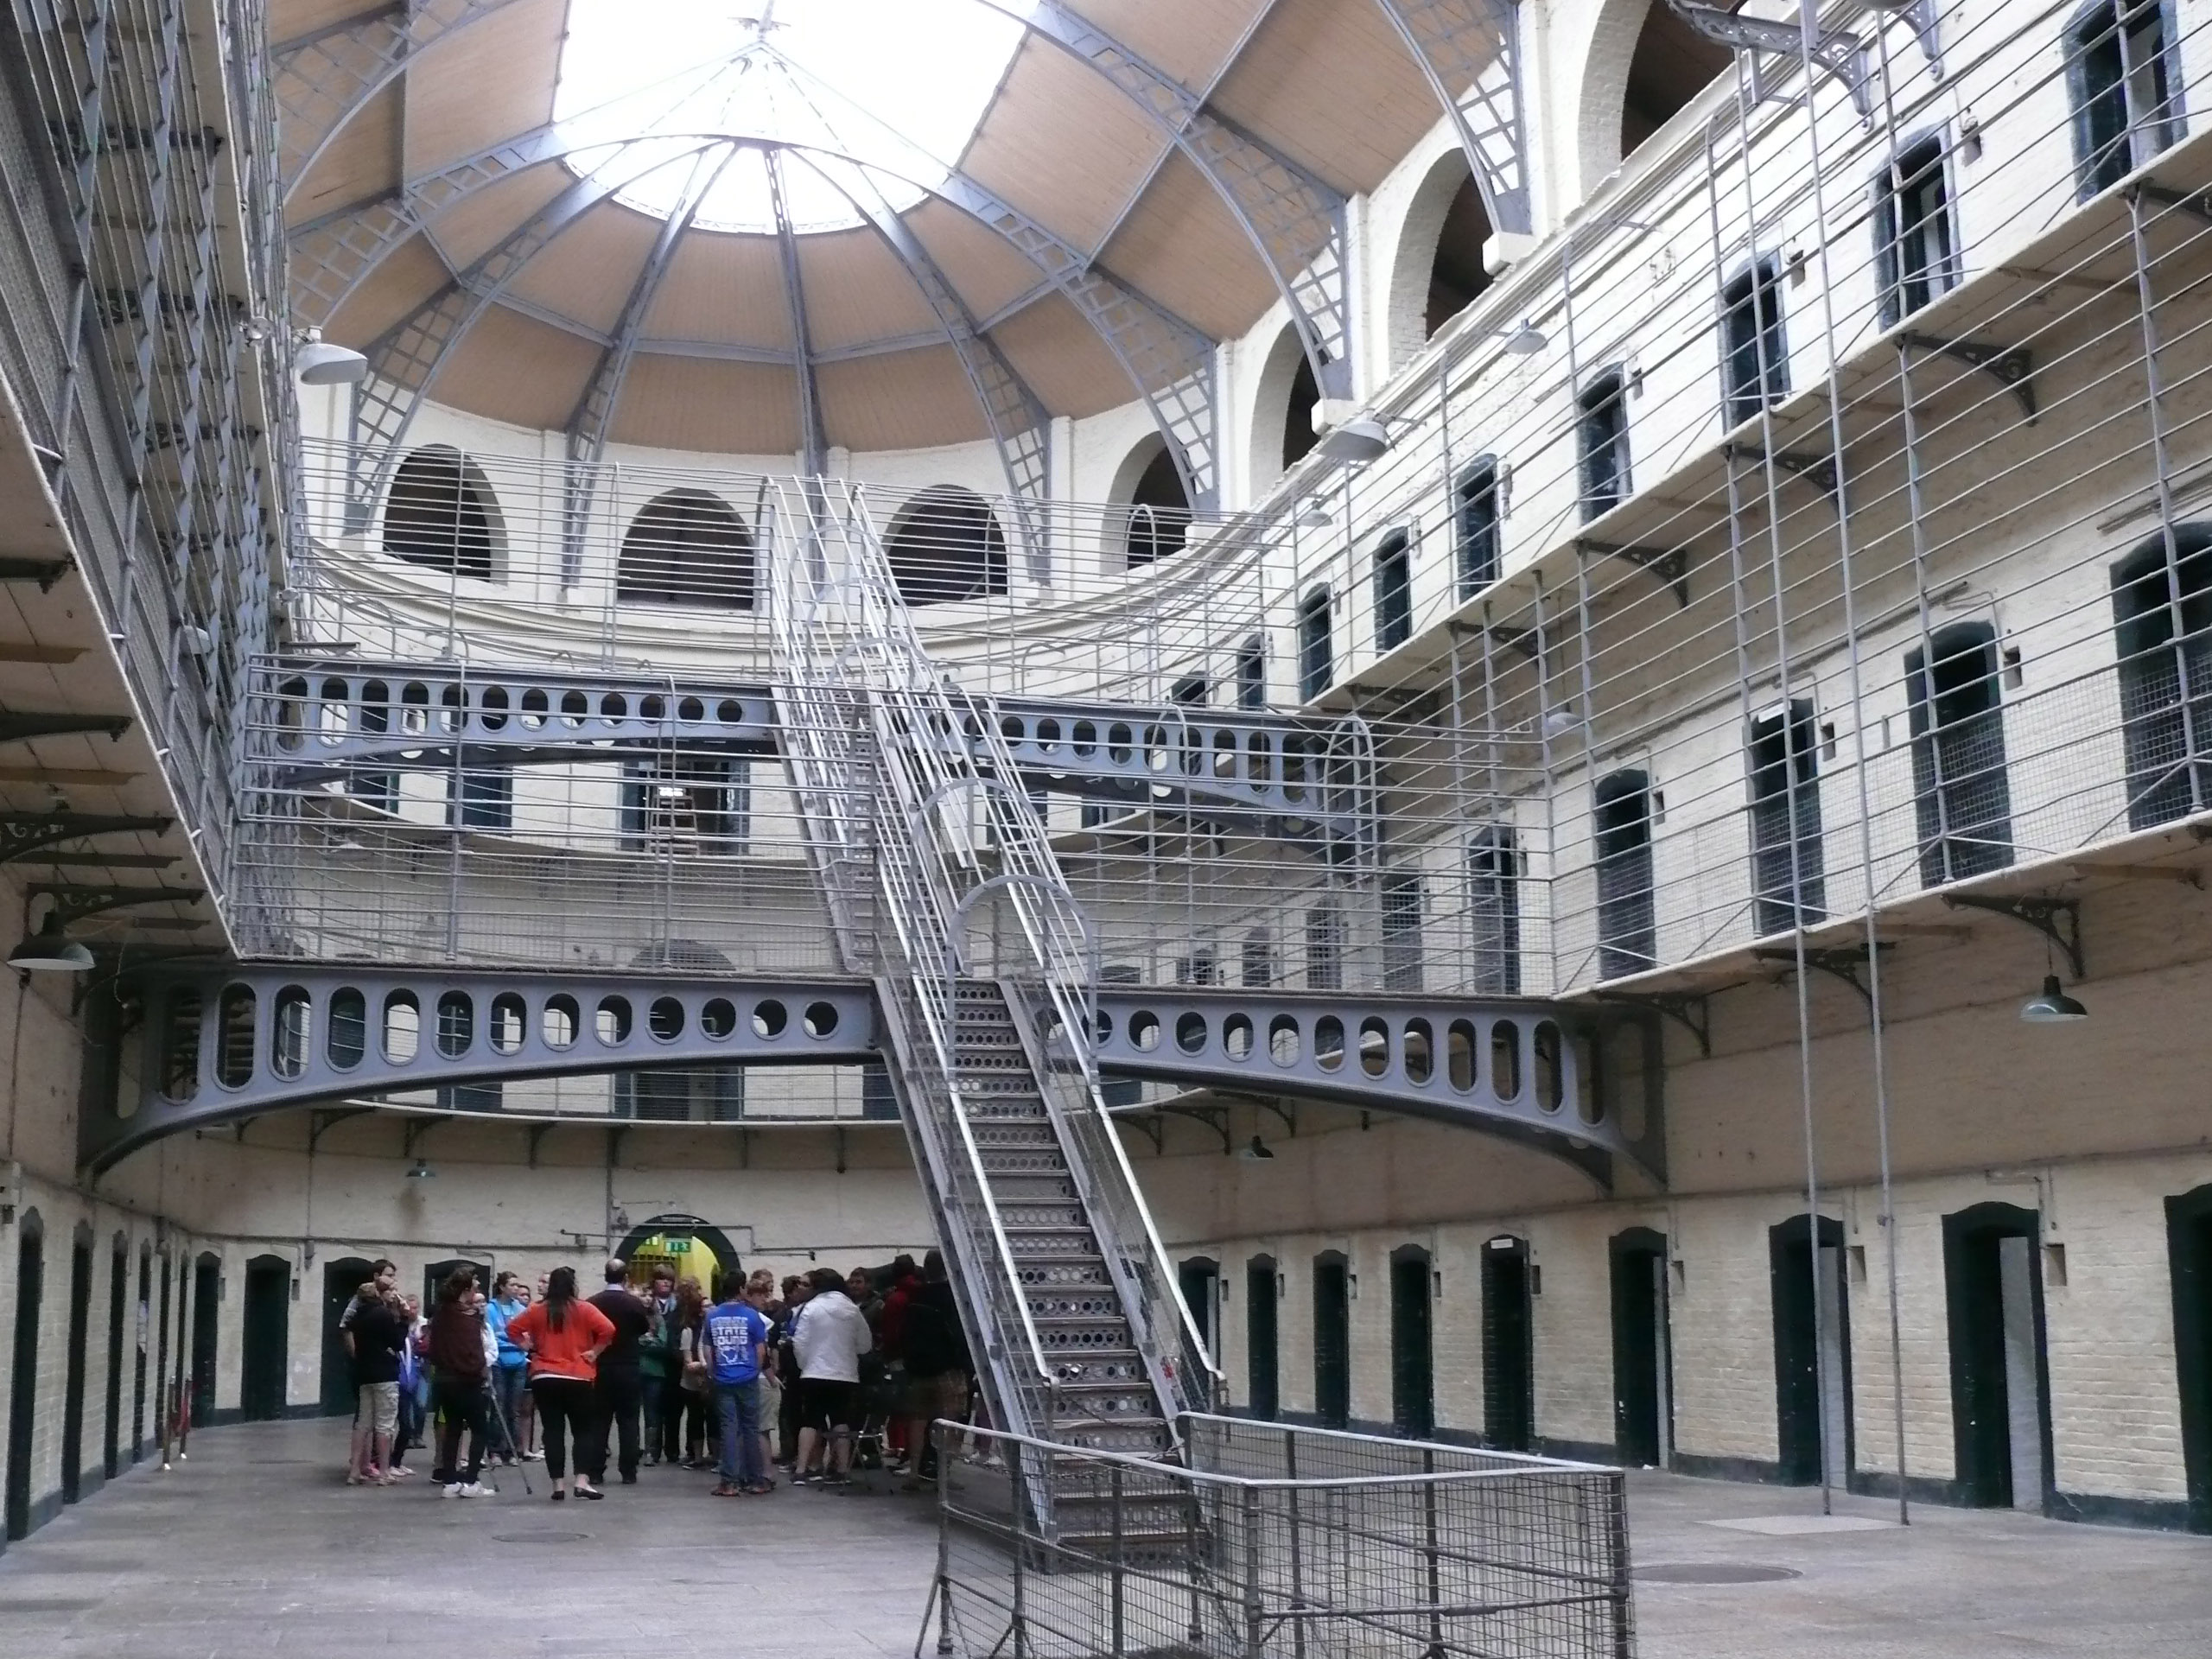 kilmainhamgaol-jail-dublin-ireland